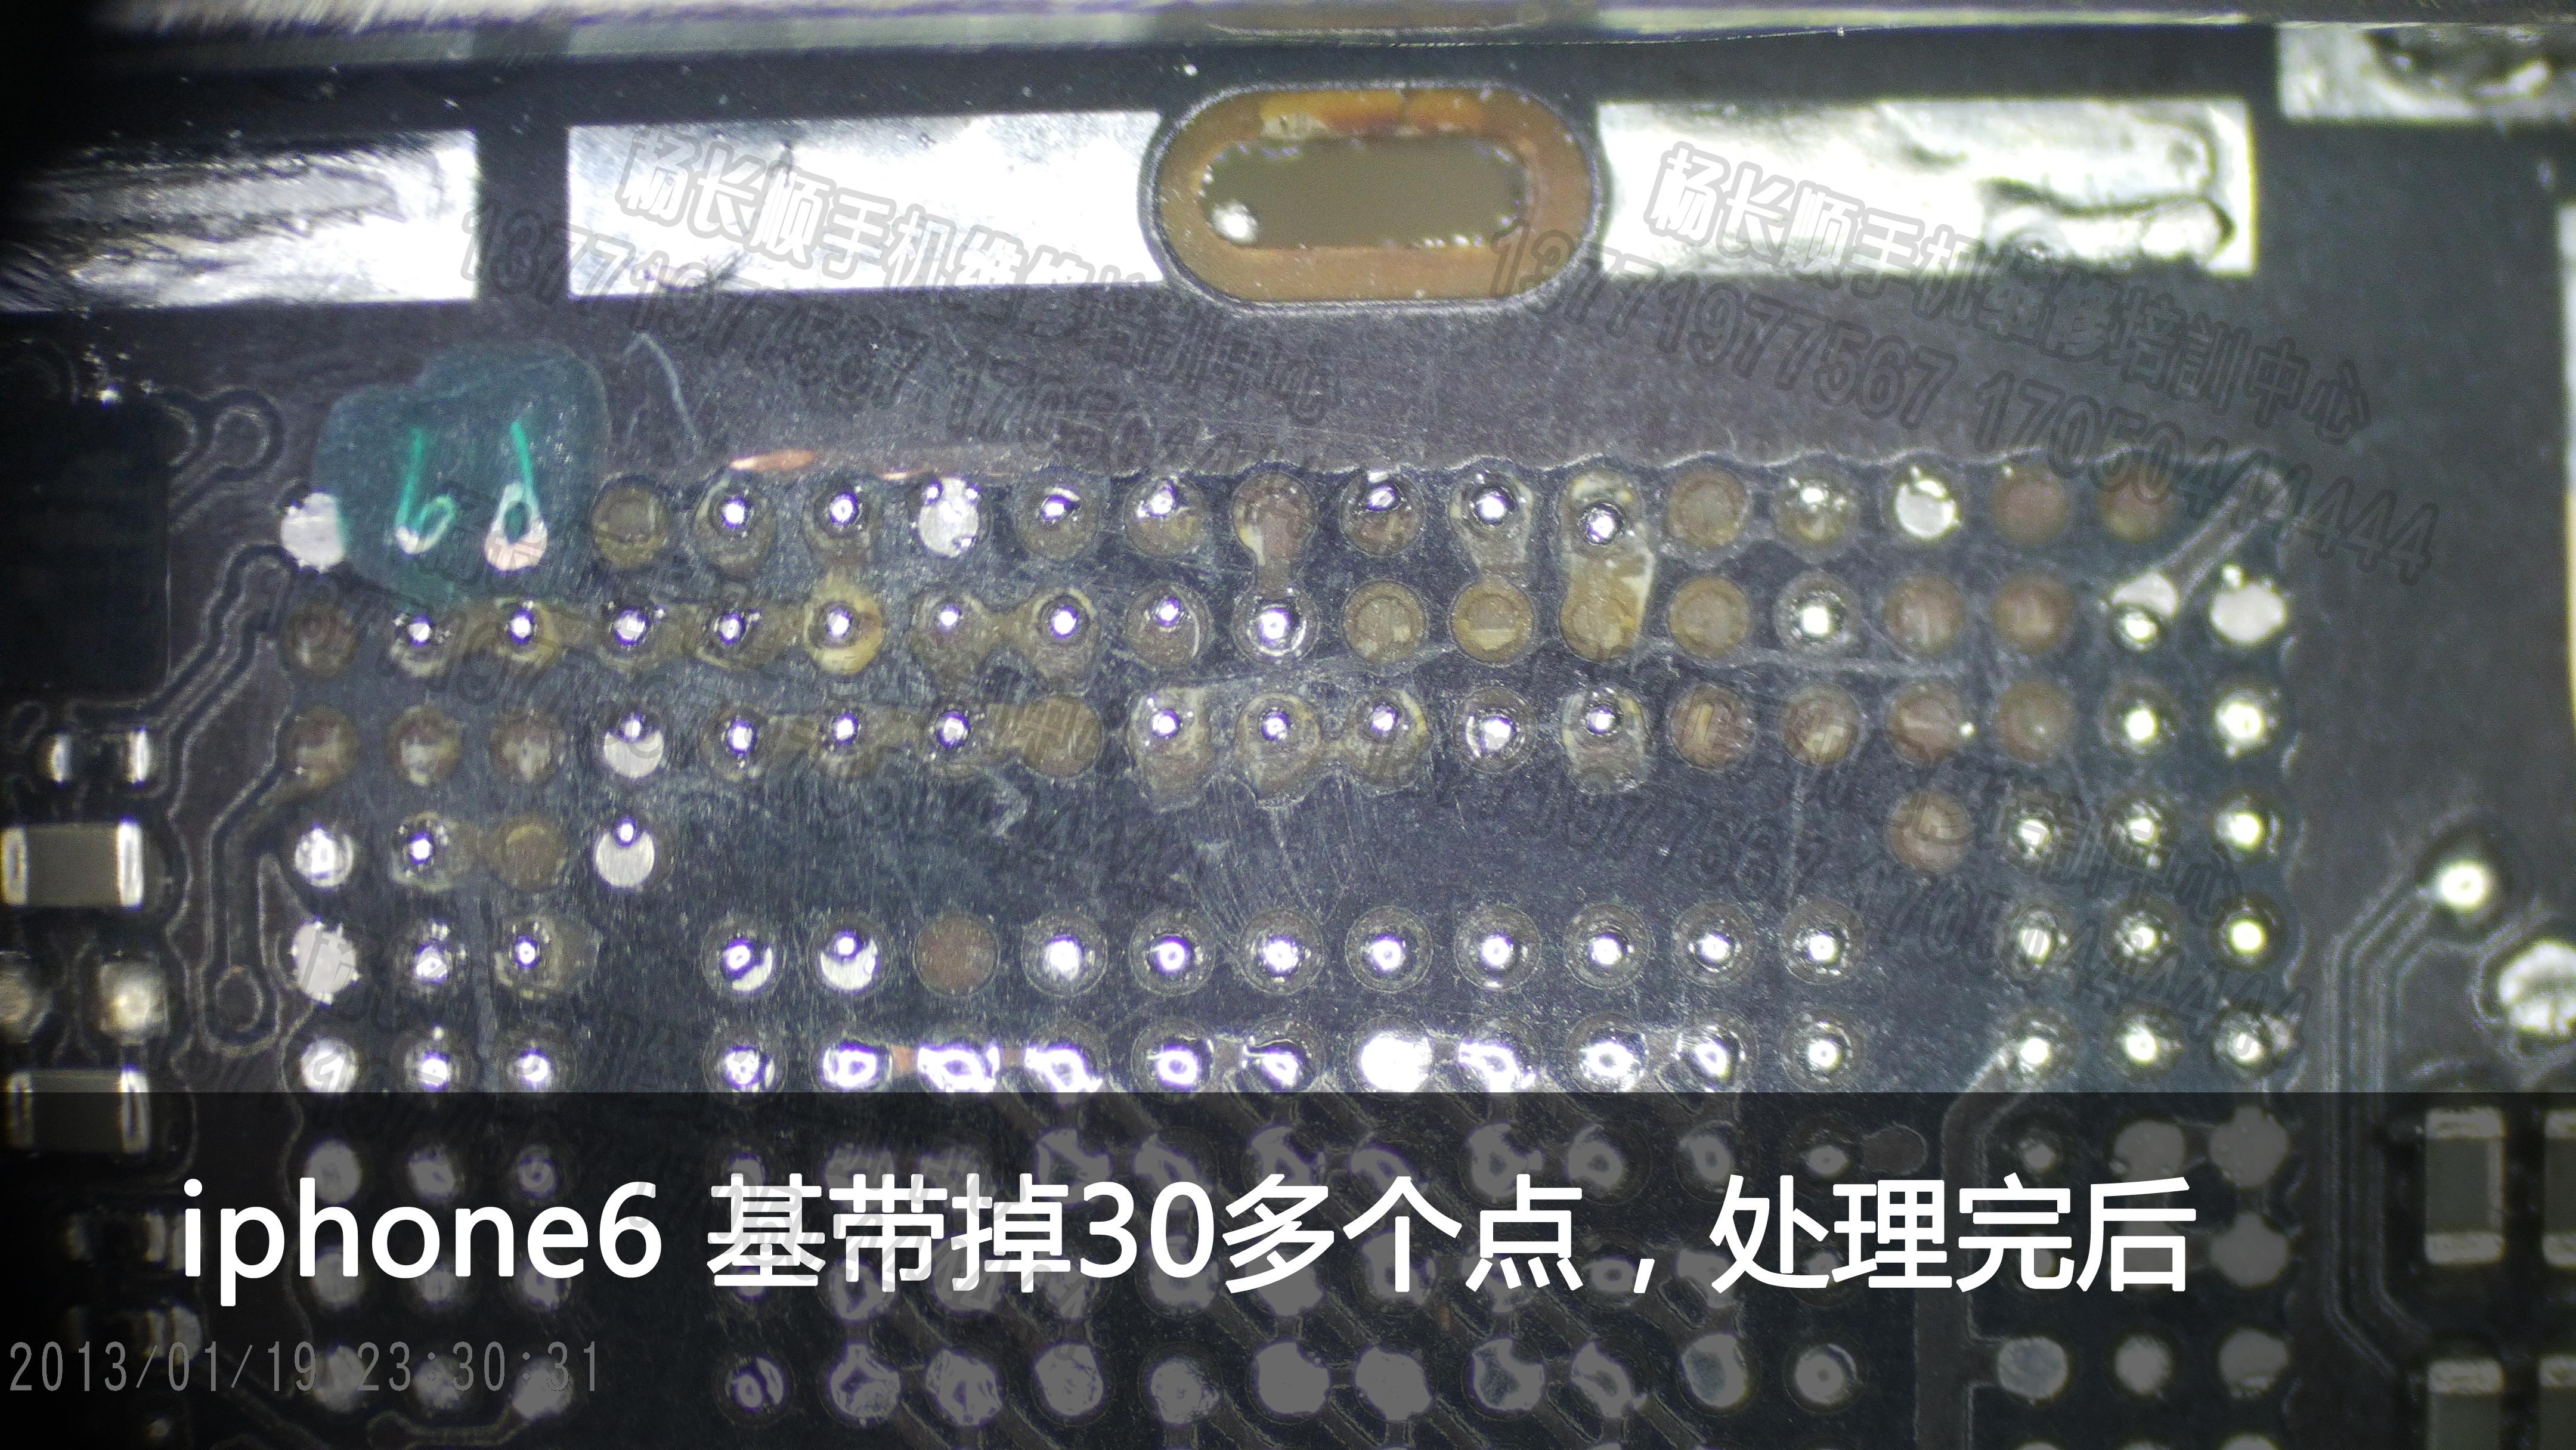 杨长顺首拆iPhone 15 pro max，4款机型摄像头都出现7~8个灰尘，已严重翻车 178